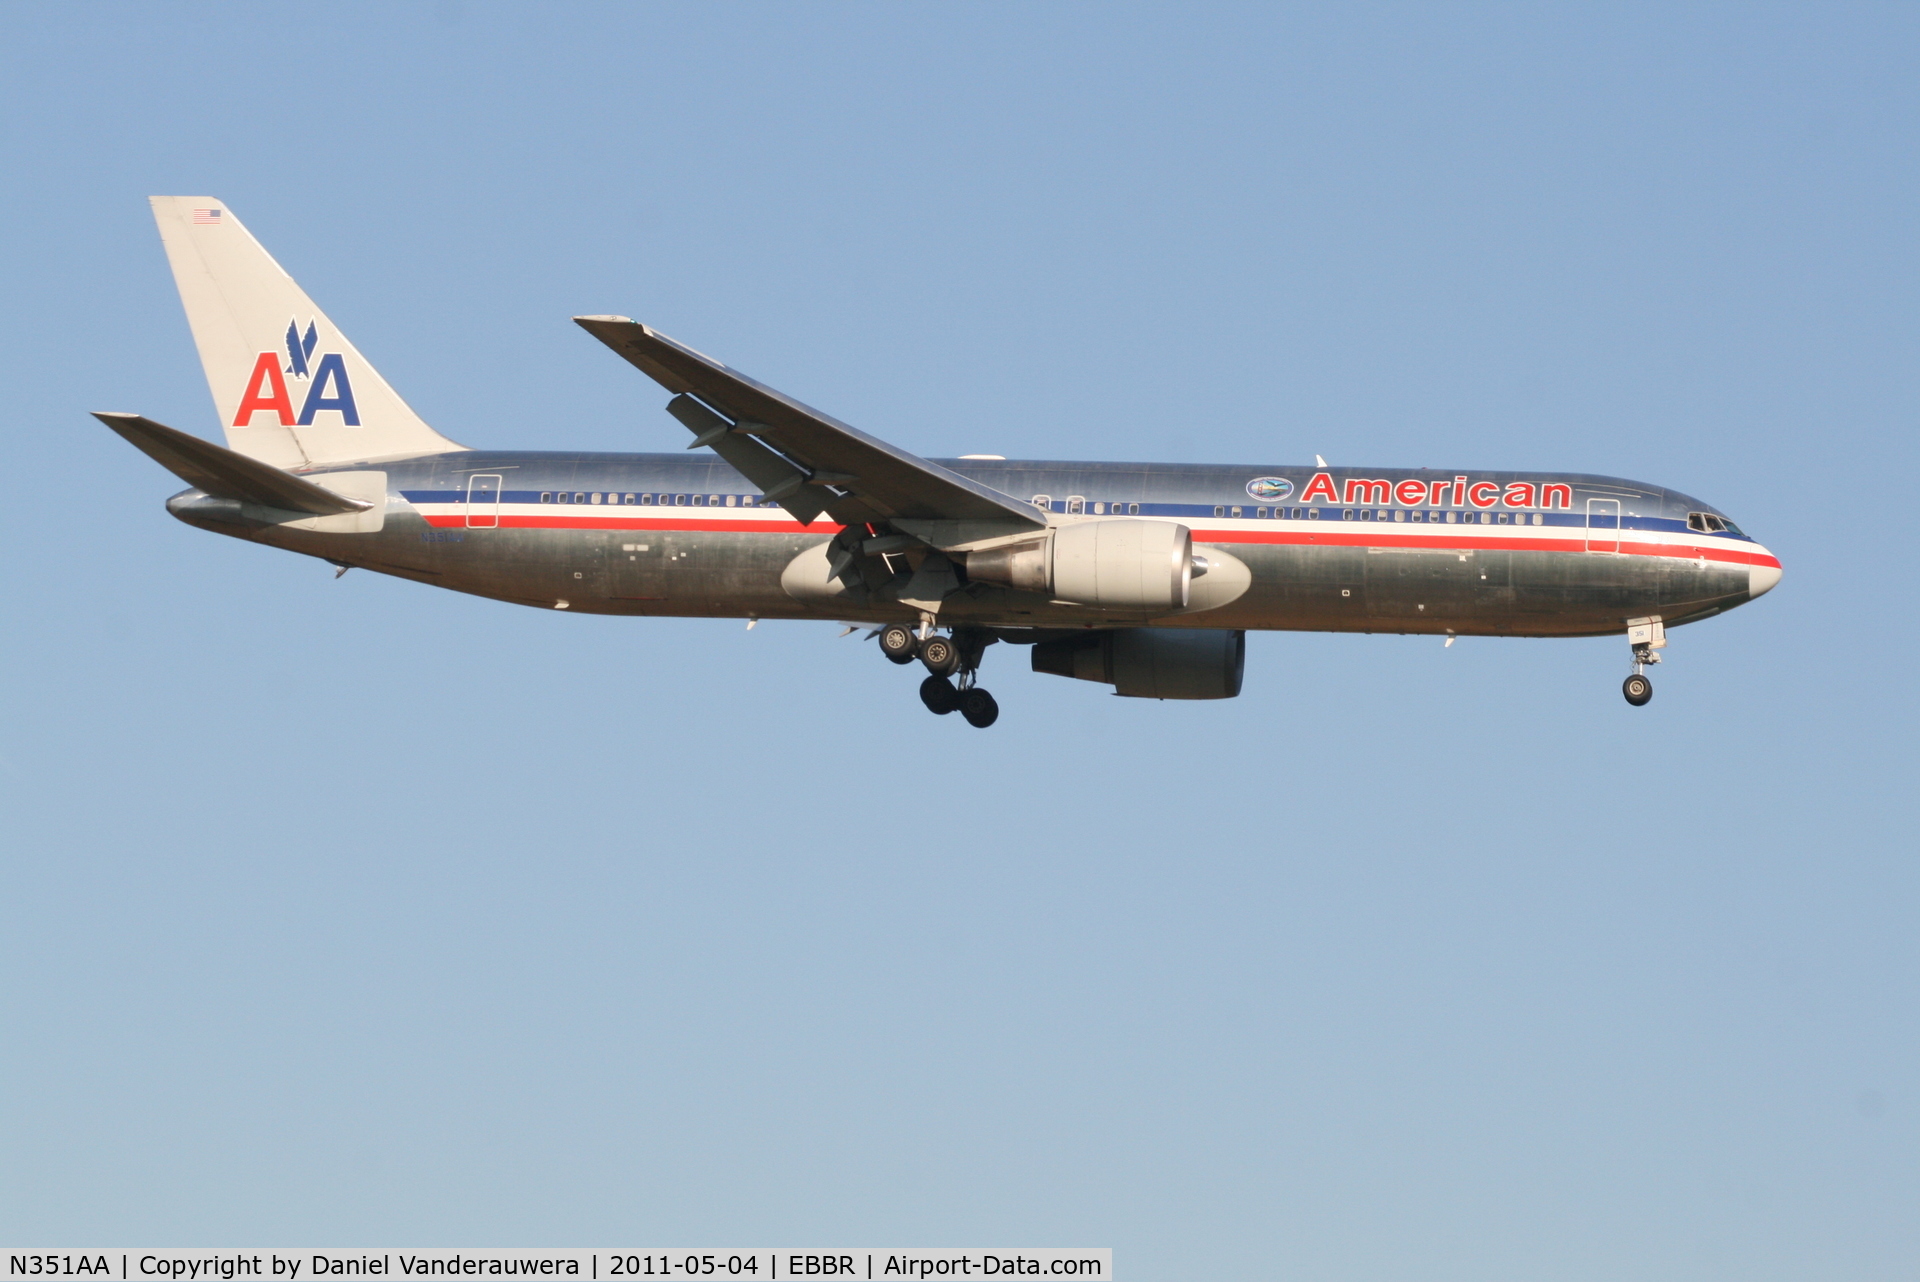 N351AA, 1988 Boeing 767-323 C/N 24032, Flight AA088 is descending to RWY 02